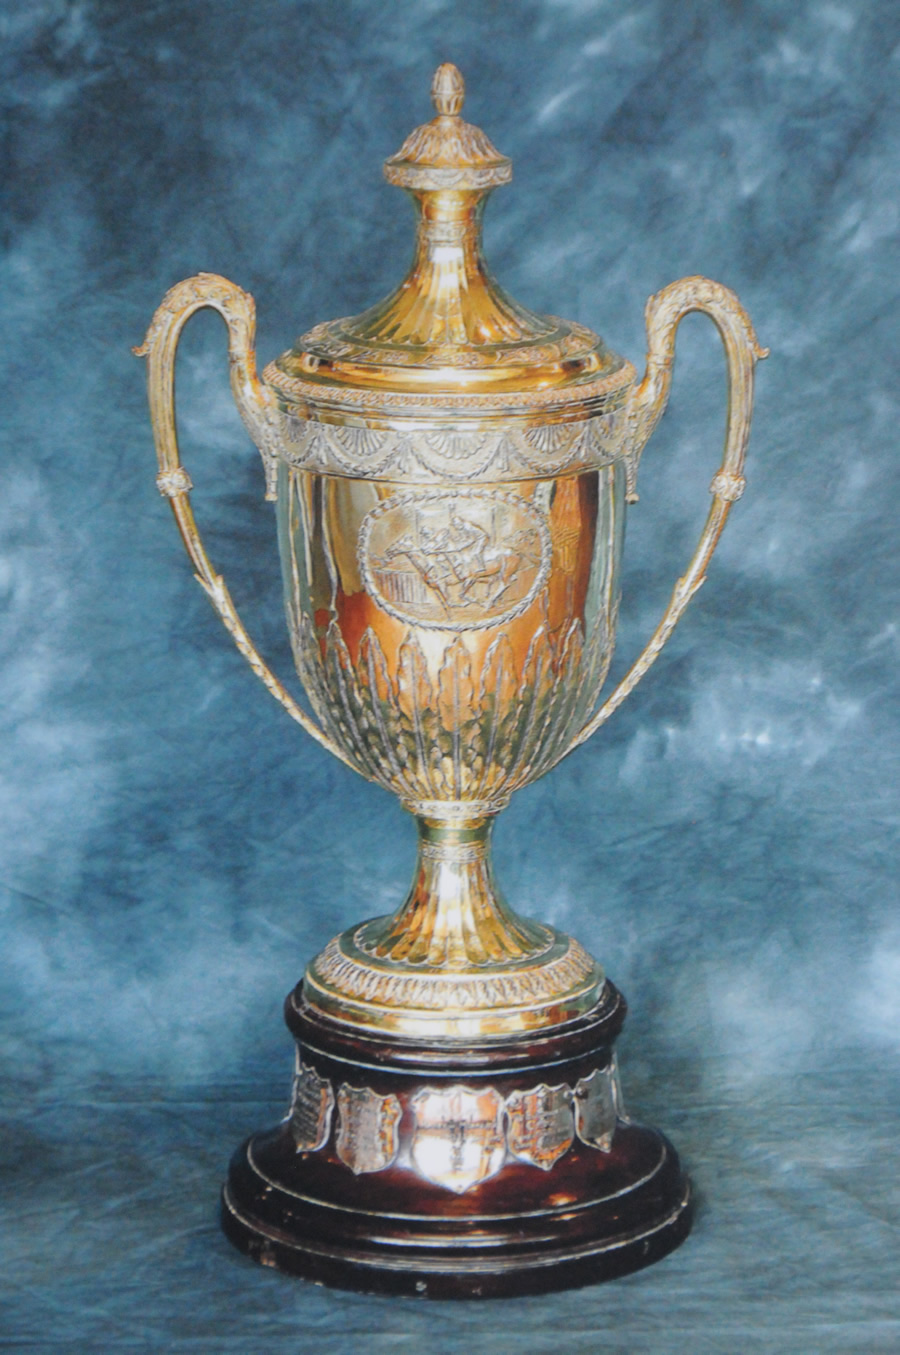 La Duke of York Cup, qui est plus connue sous le nom de Coupe d’or.